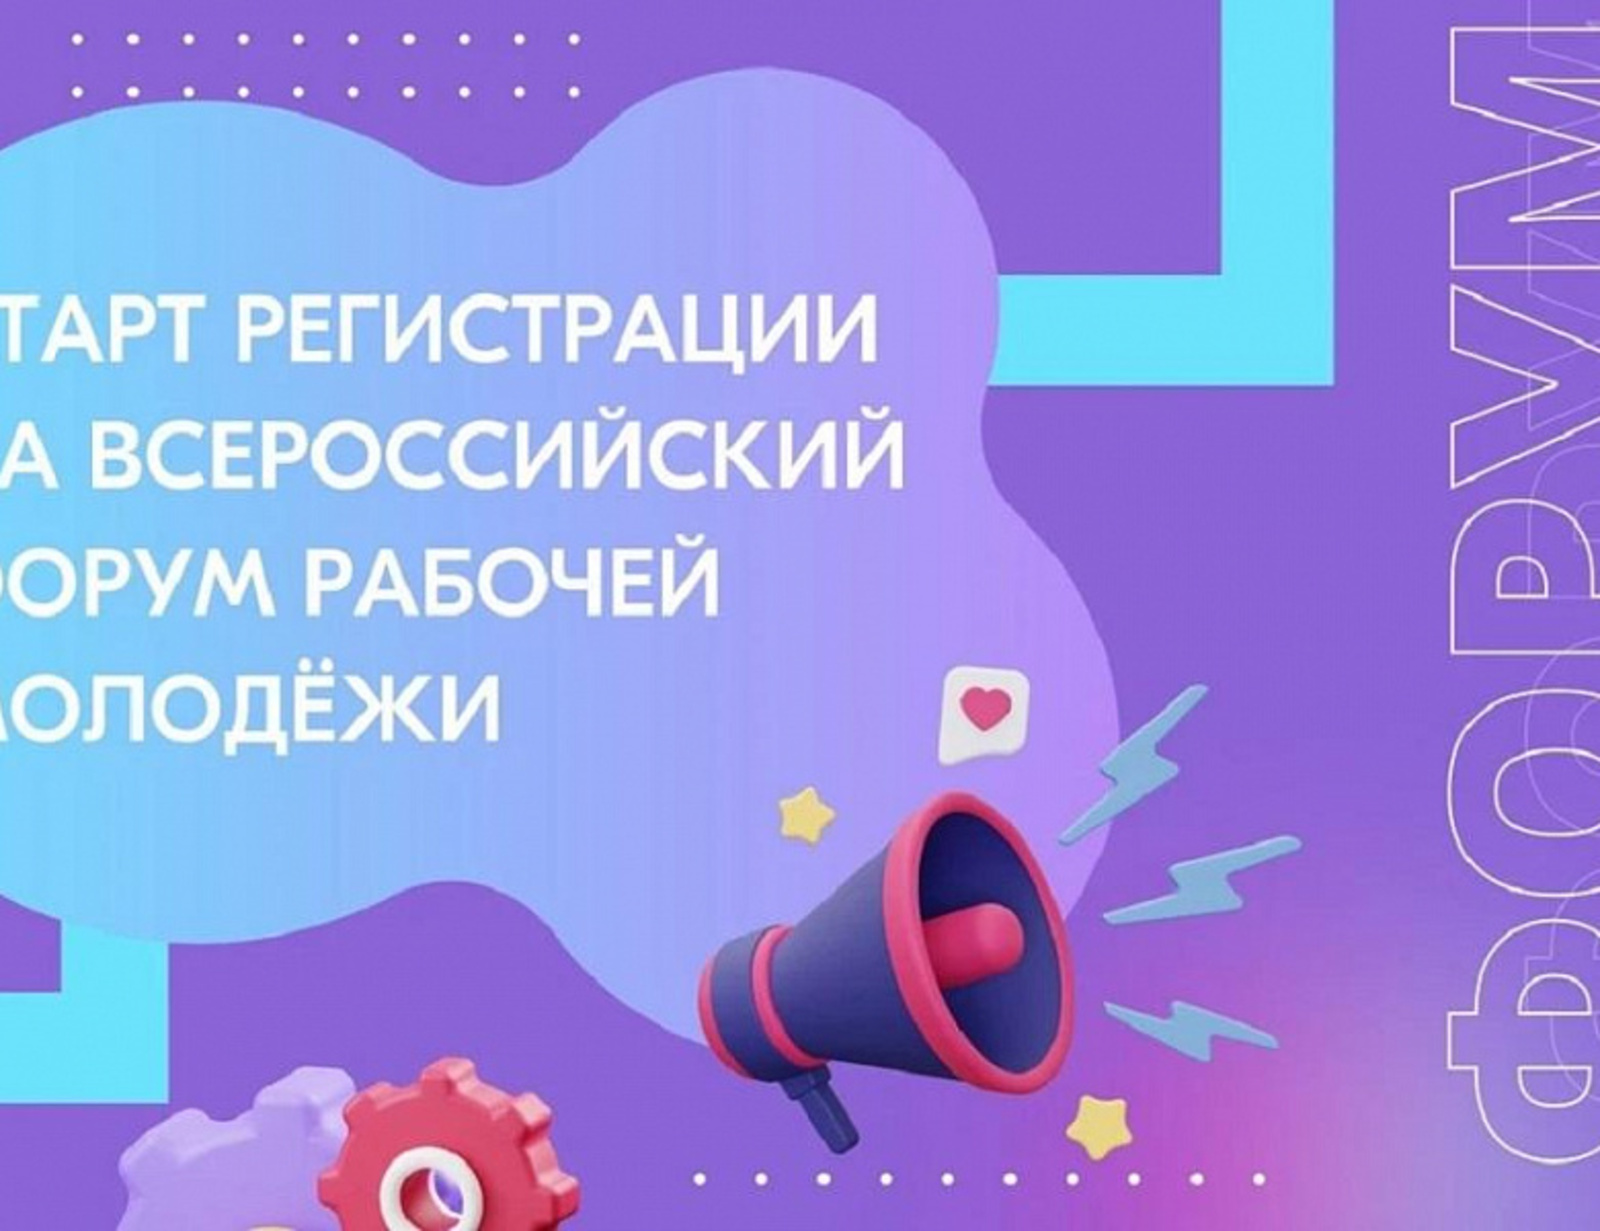 Специалисты Башкортостана смогут принять участие во Всероссийском форуме рабочей молодёжи